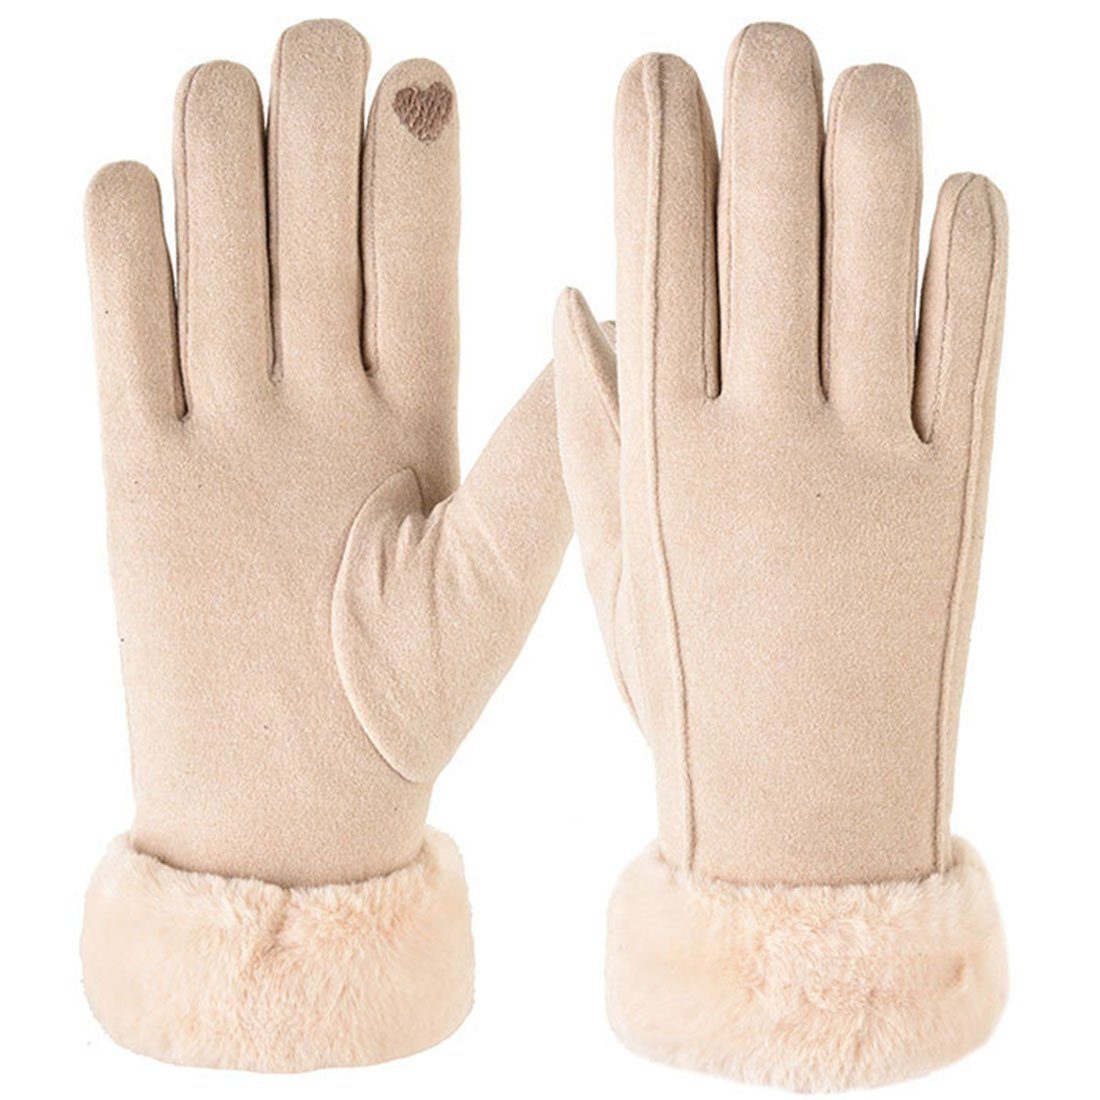 Ronner UG Baumwollhandschuhe kalte Handschuhe, Winterwarme Handschuhe, Touchscreen-Handschuhe